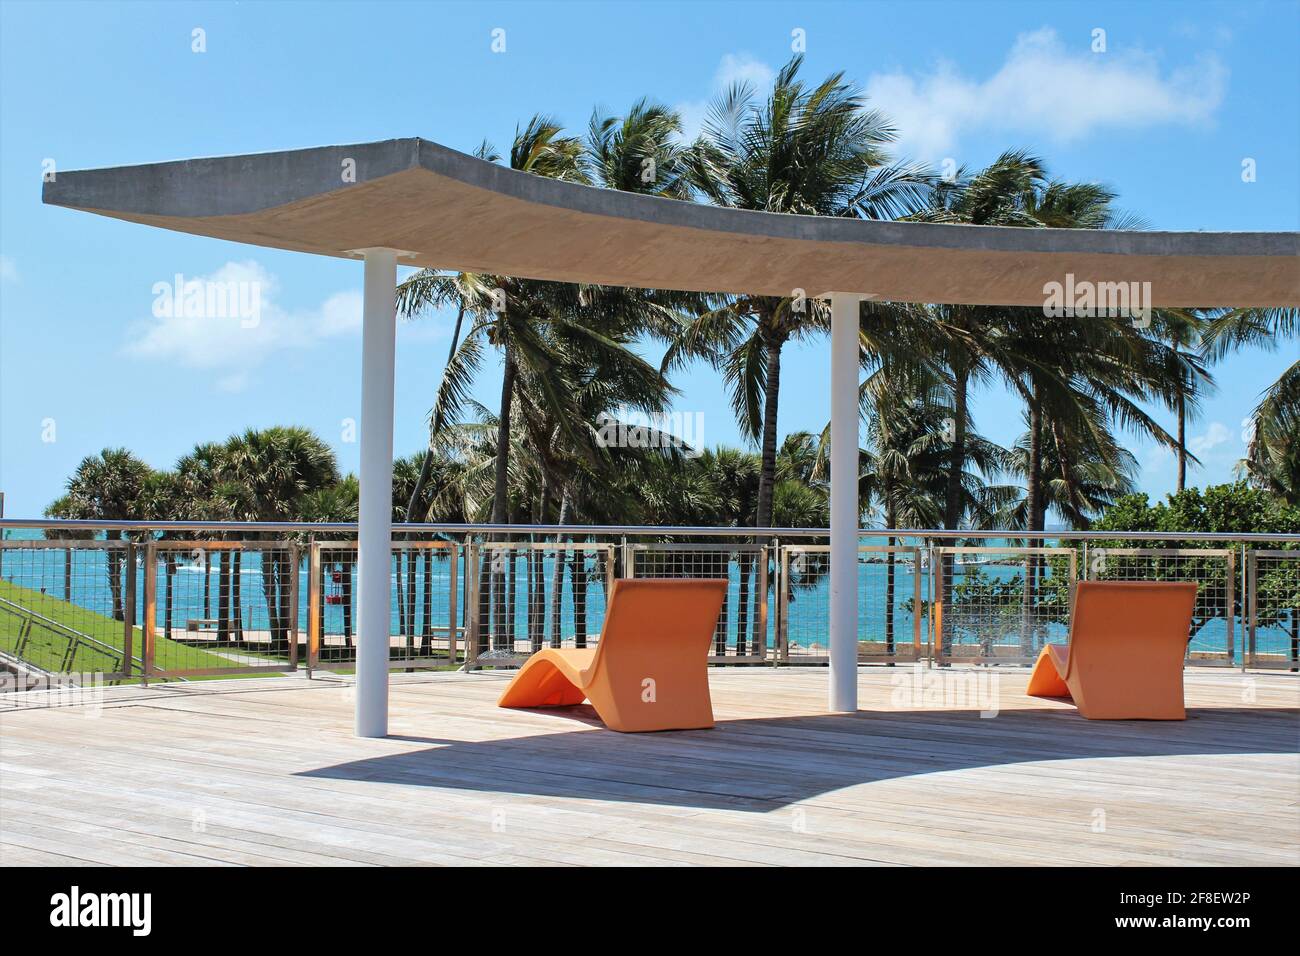 Bella zona lounge esterna con sedie da spiaggia arancioni sotto l'ombra. Paradiso tropicale vacanze hotel a Miami Beach Florida. Foto Stock